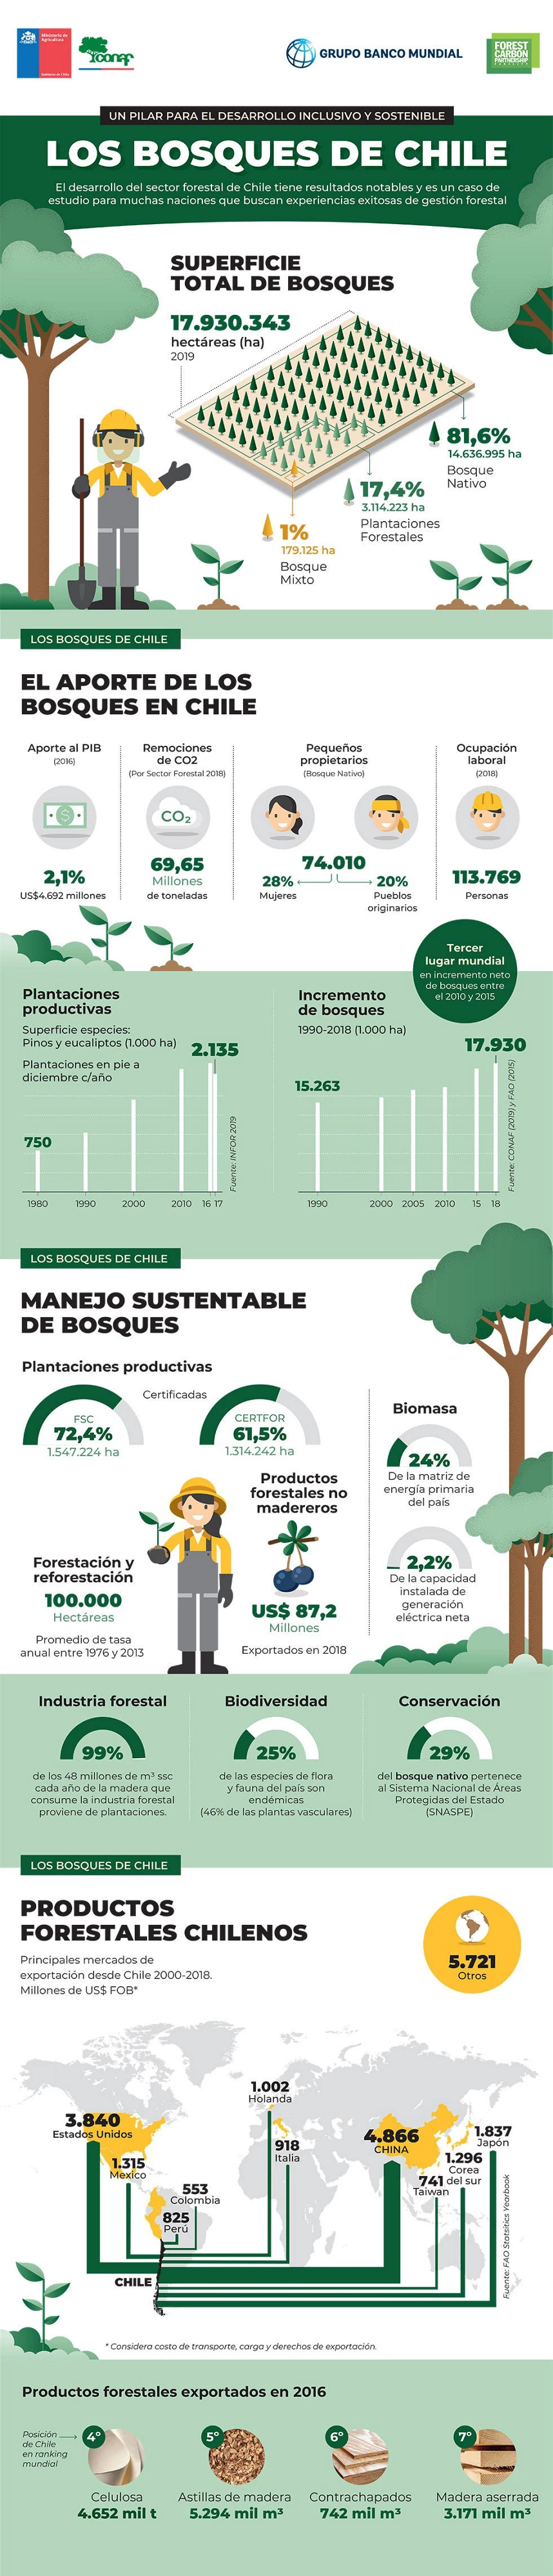 Infografía: Los bosques de Chile